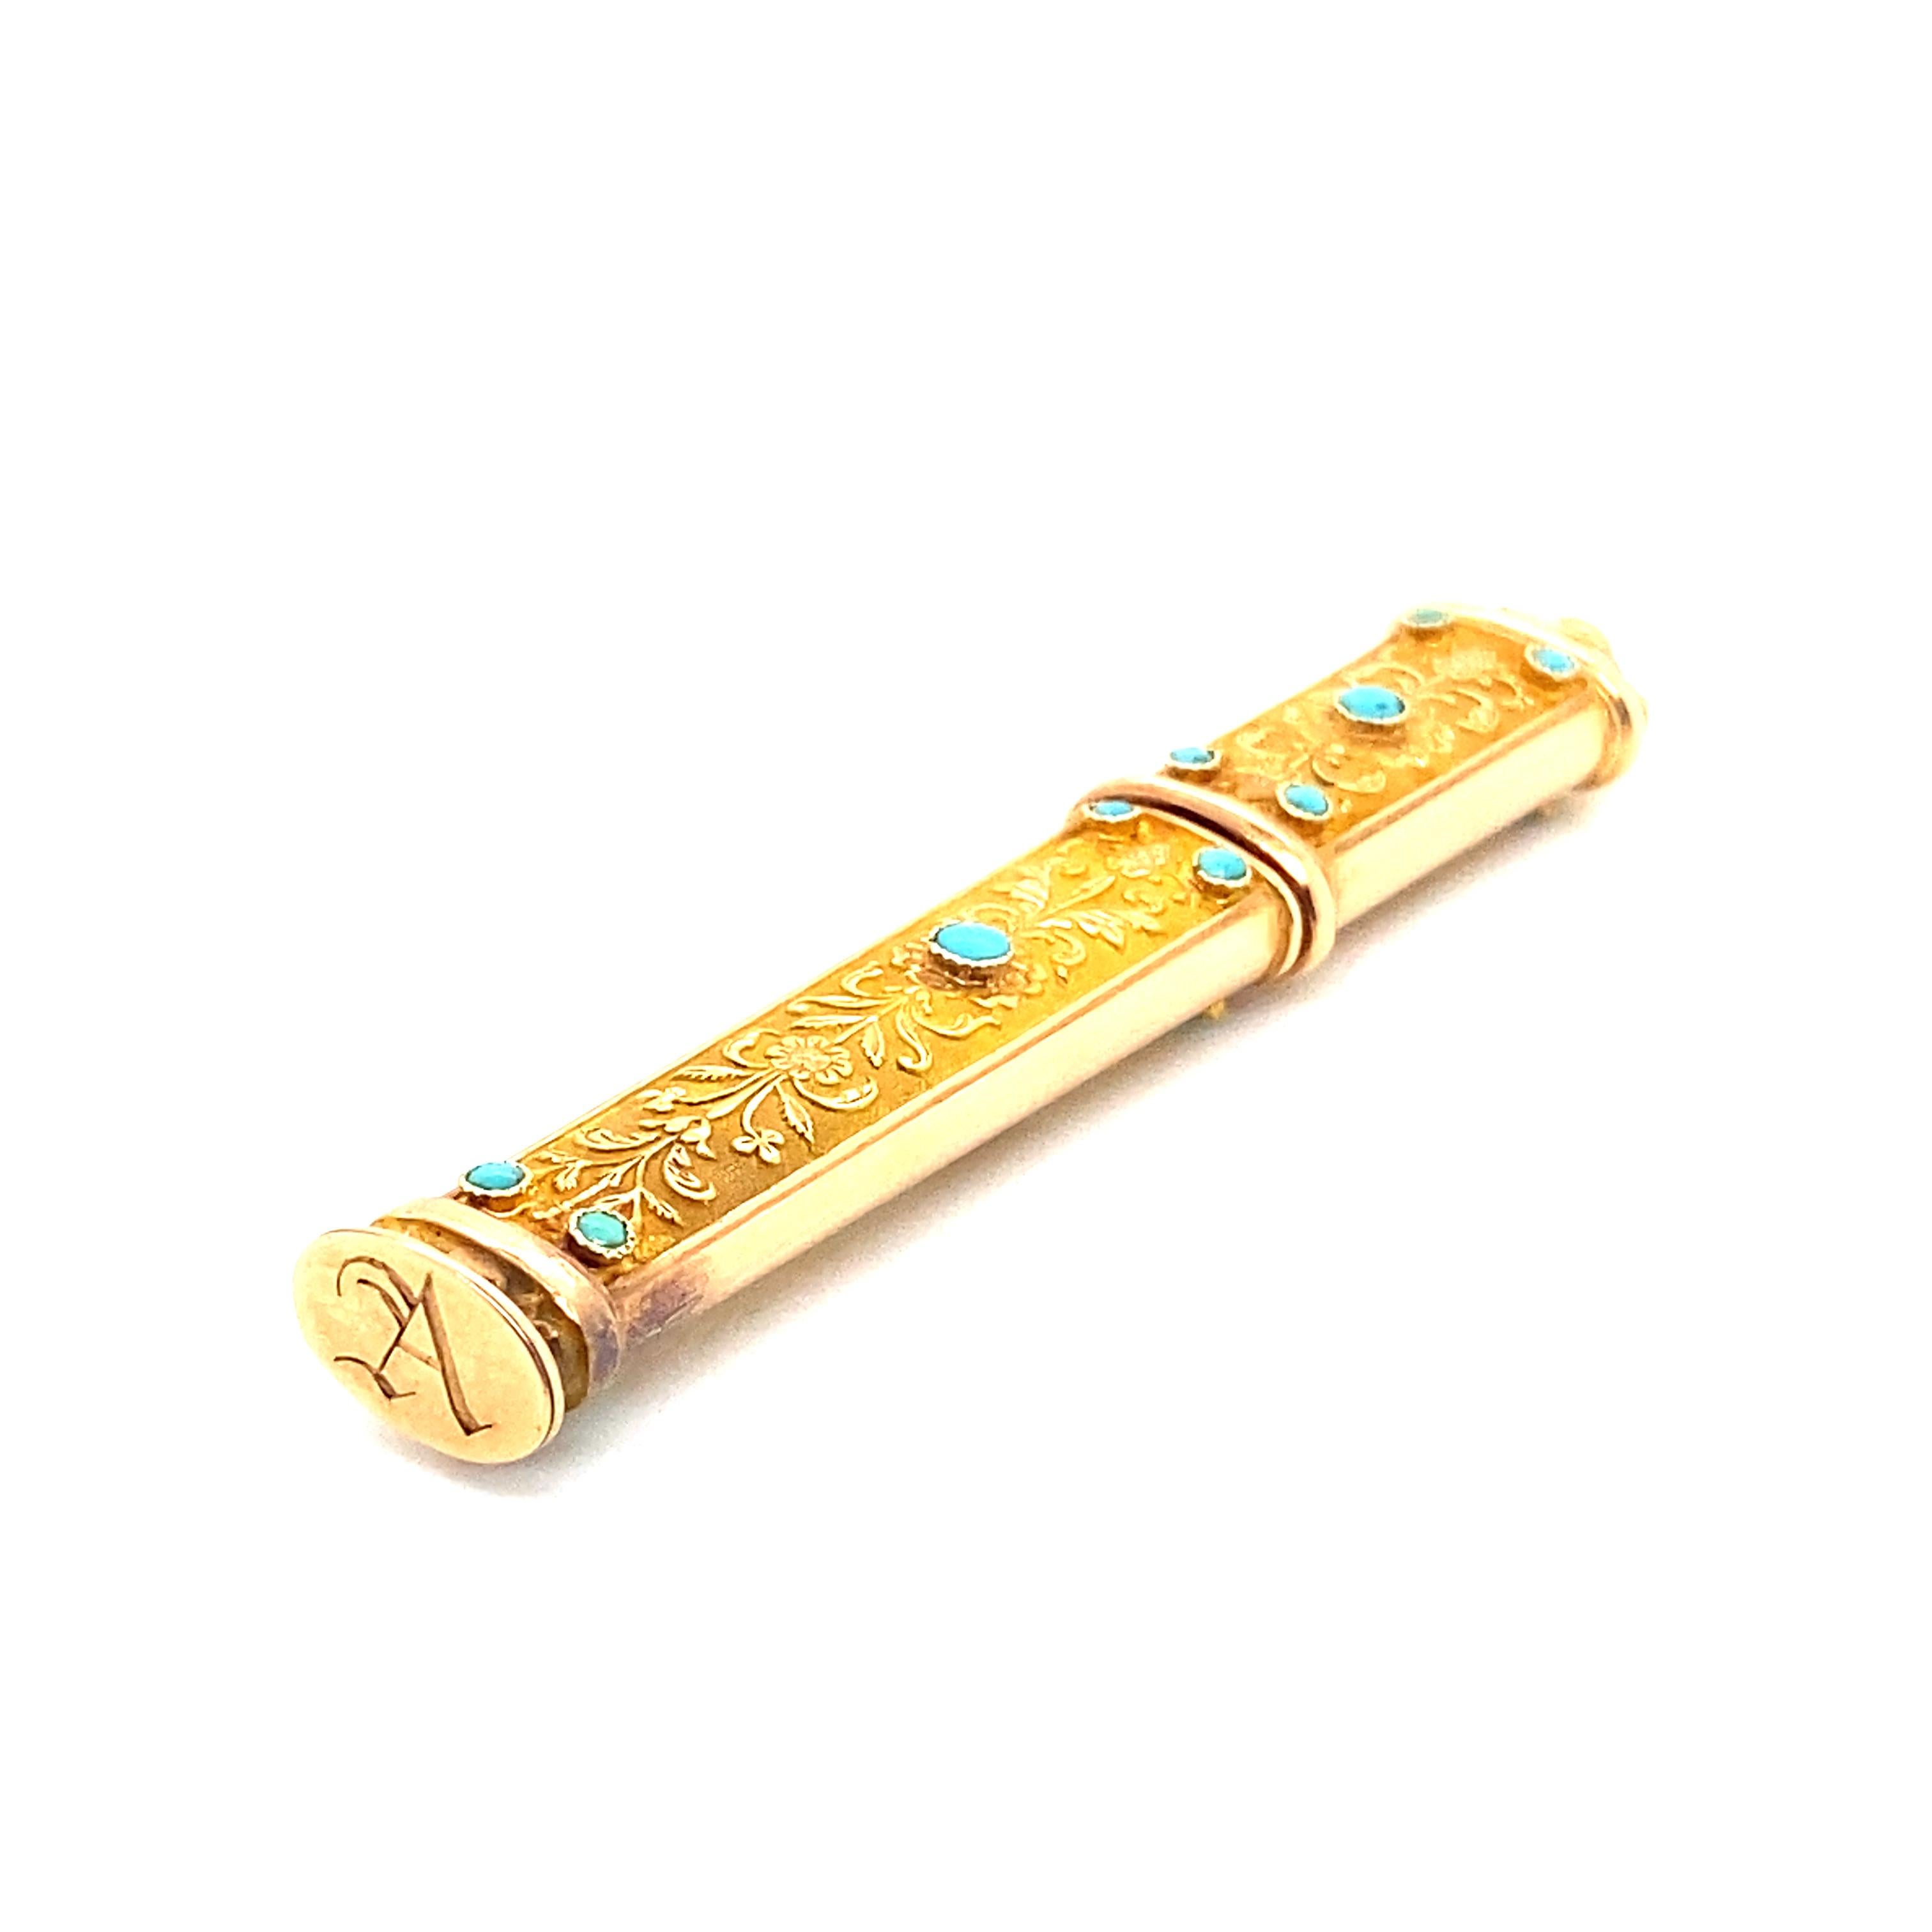 Willkommen bei Bijoux Ancien Paris. Wir freuen uns, Ihnen diese prächtige, fein gearbeitete Nadelbox aus 18-karätigem Gold vorzustellen, die mit prächtigen Türkiscabochons und zarten Blumendekorationen verziert ist.

Diese Nadelbox ist ein